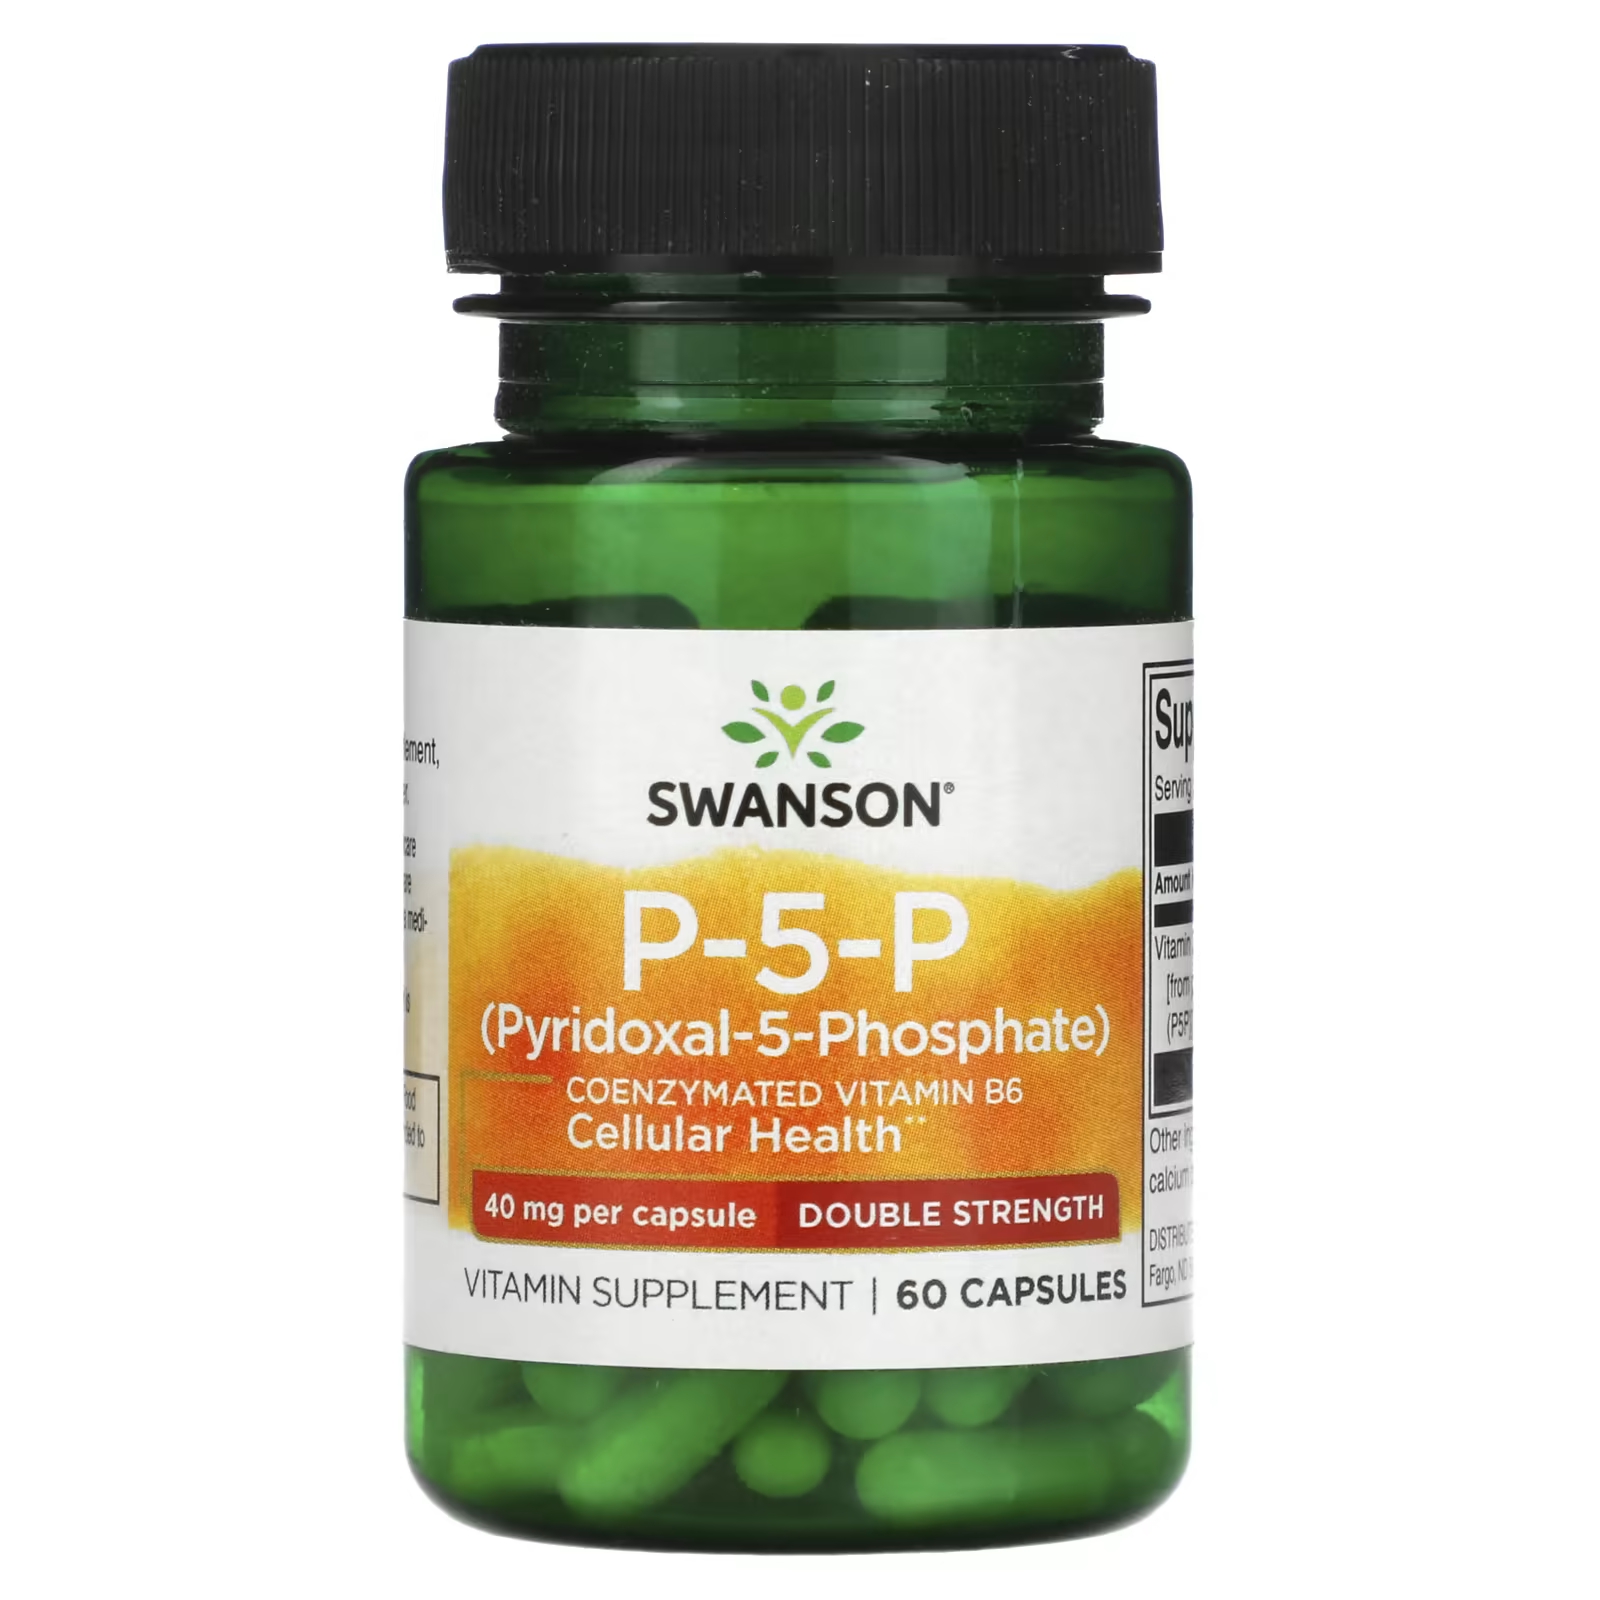 Биологически активная добавка Swanson P-5-P двойная сила, 40 мг., 60 капсул